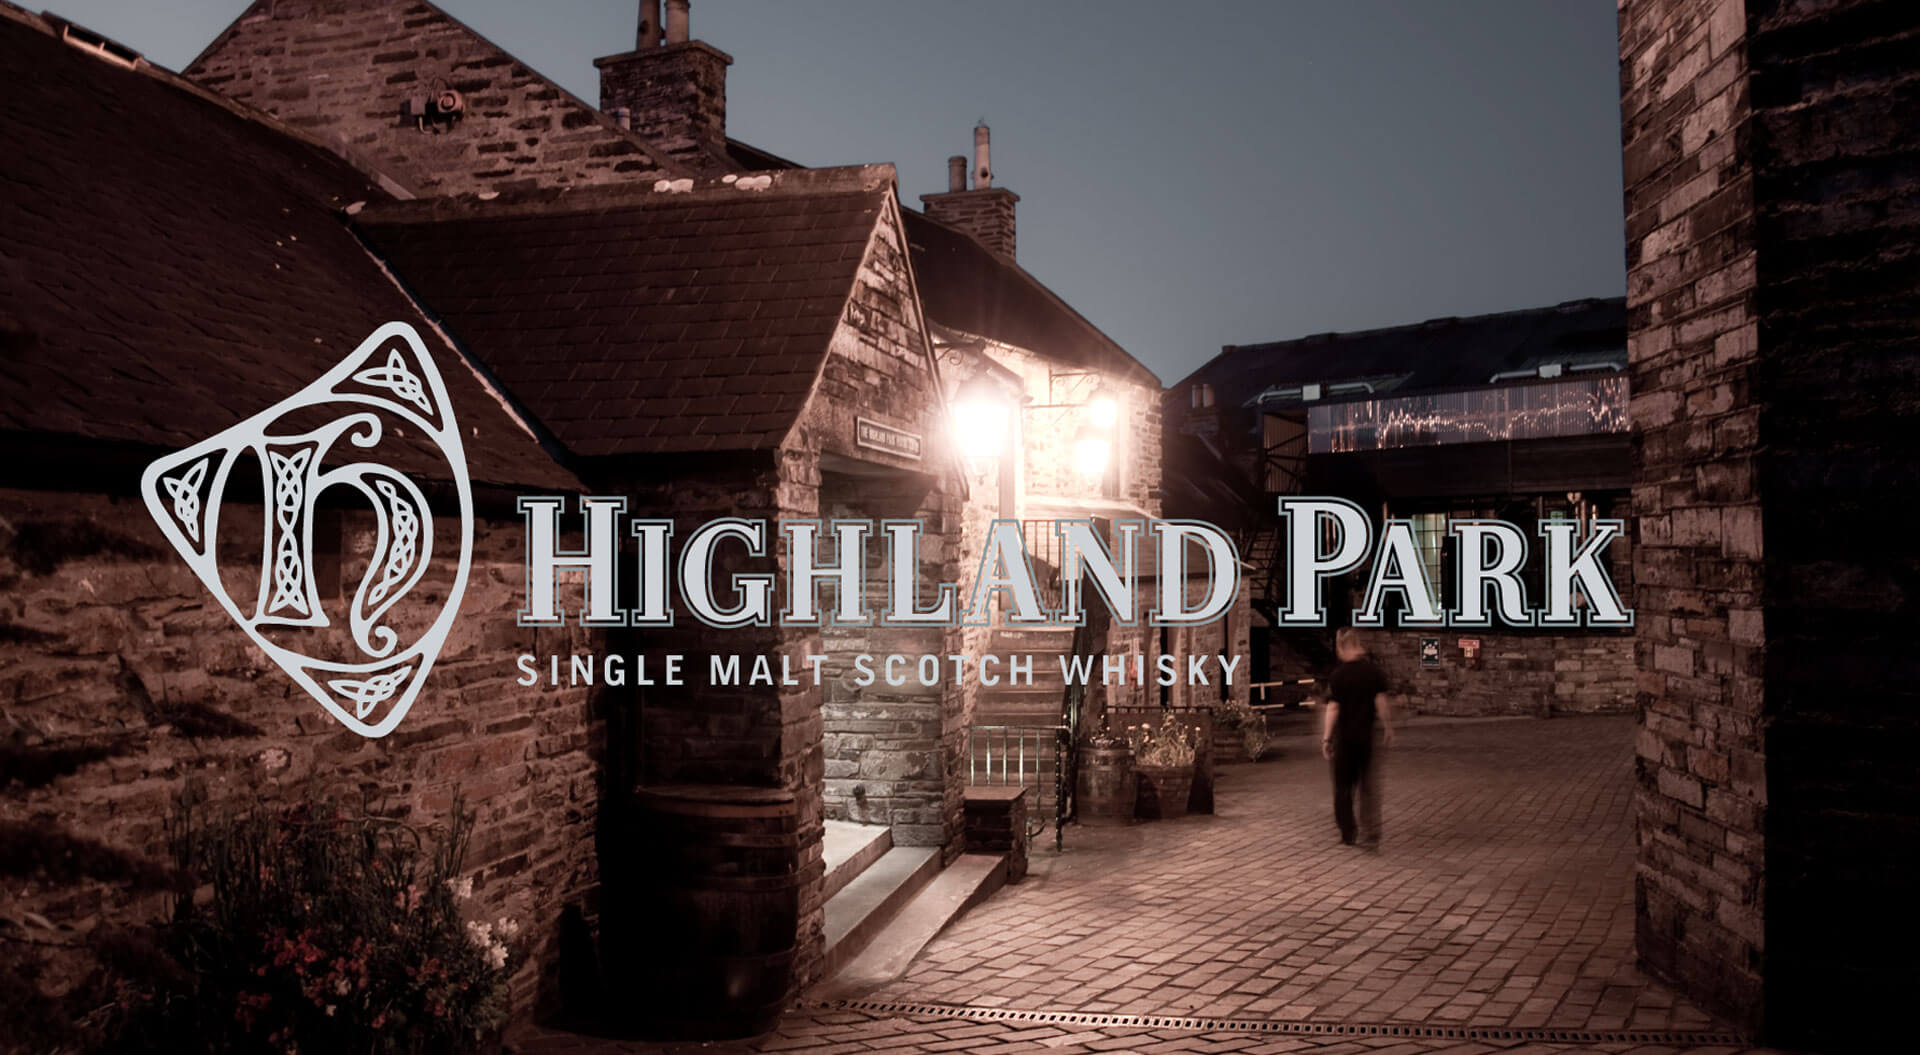 Highland Park Single Malt Scotch Whisky brand identity and distillery